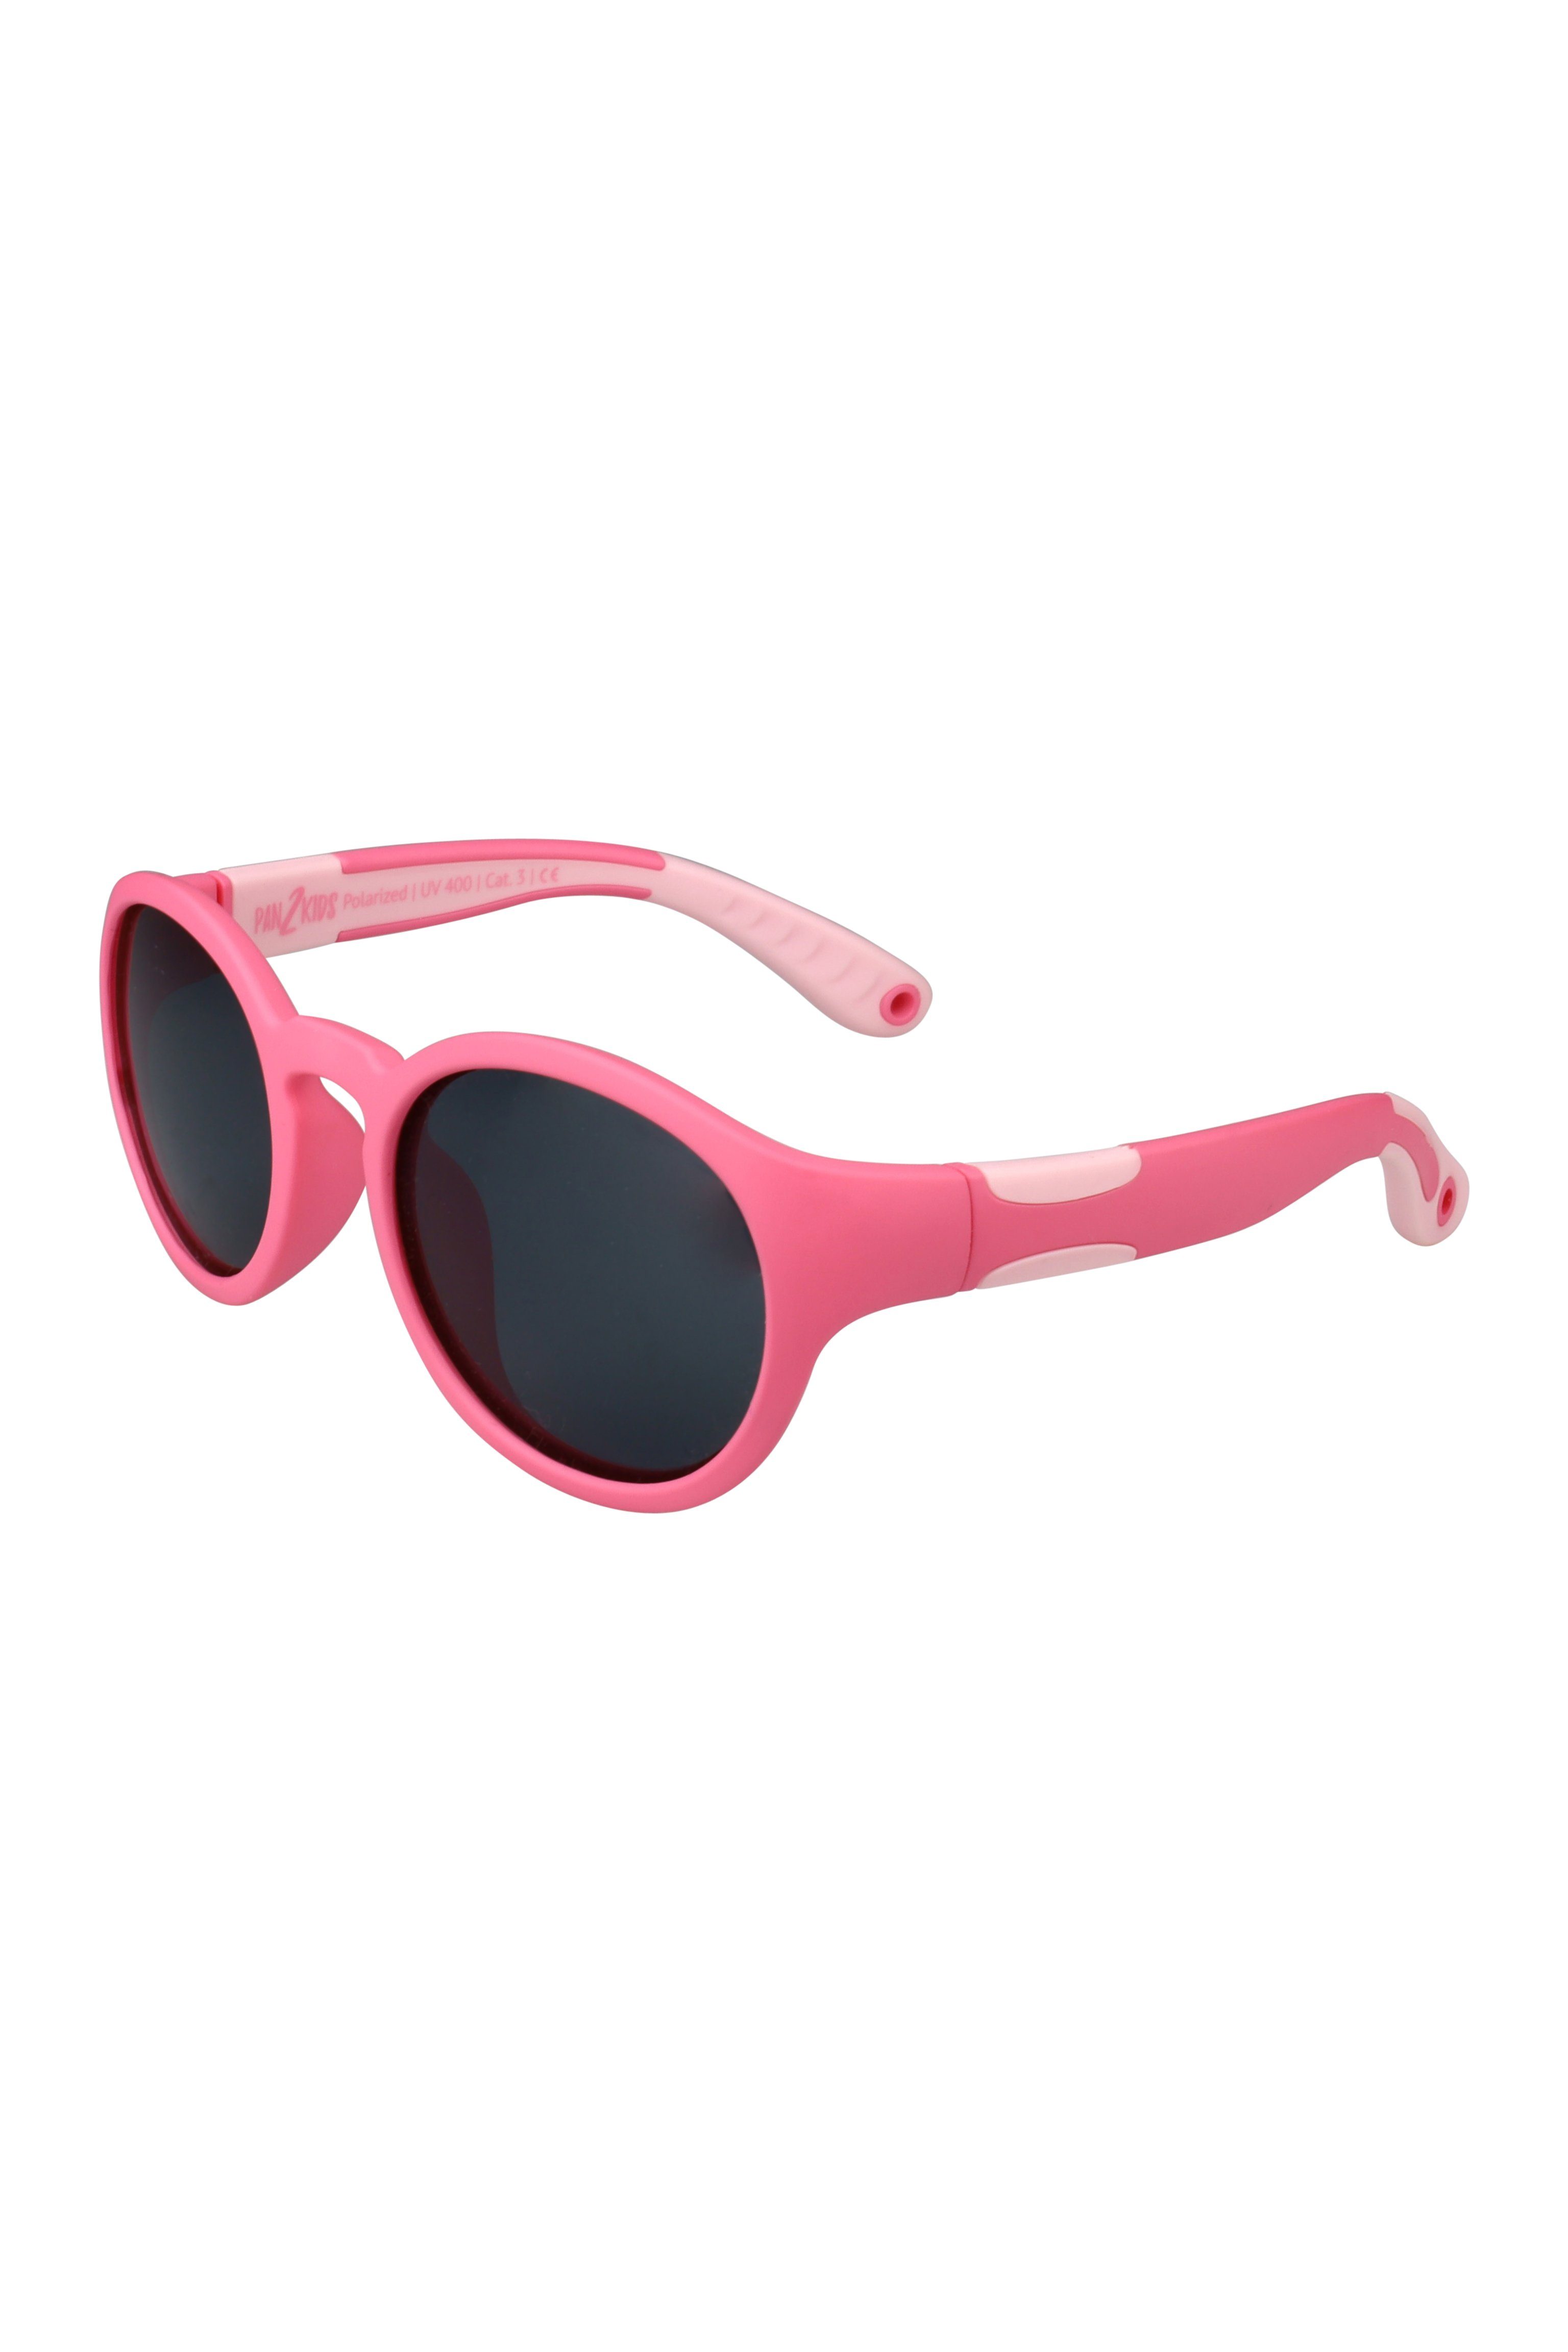 ActiveSol SUNGLASSES Sonnenbrille für Kinder - Pan2Kids, Panto Design, 2 – 5 Jahre, polarisiert Pacific Pink